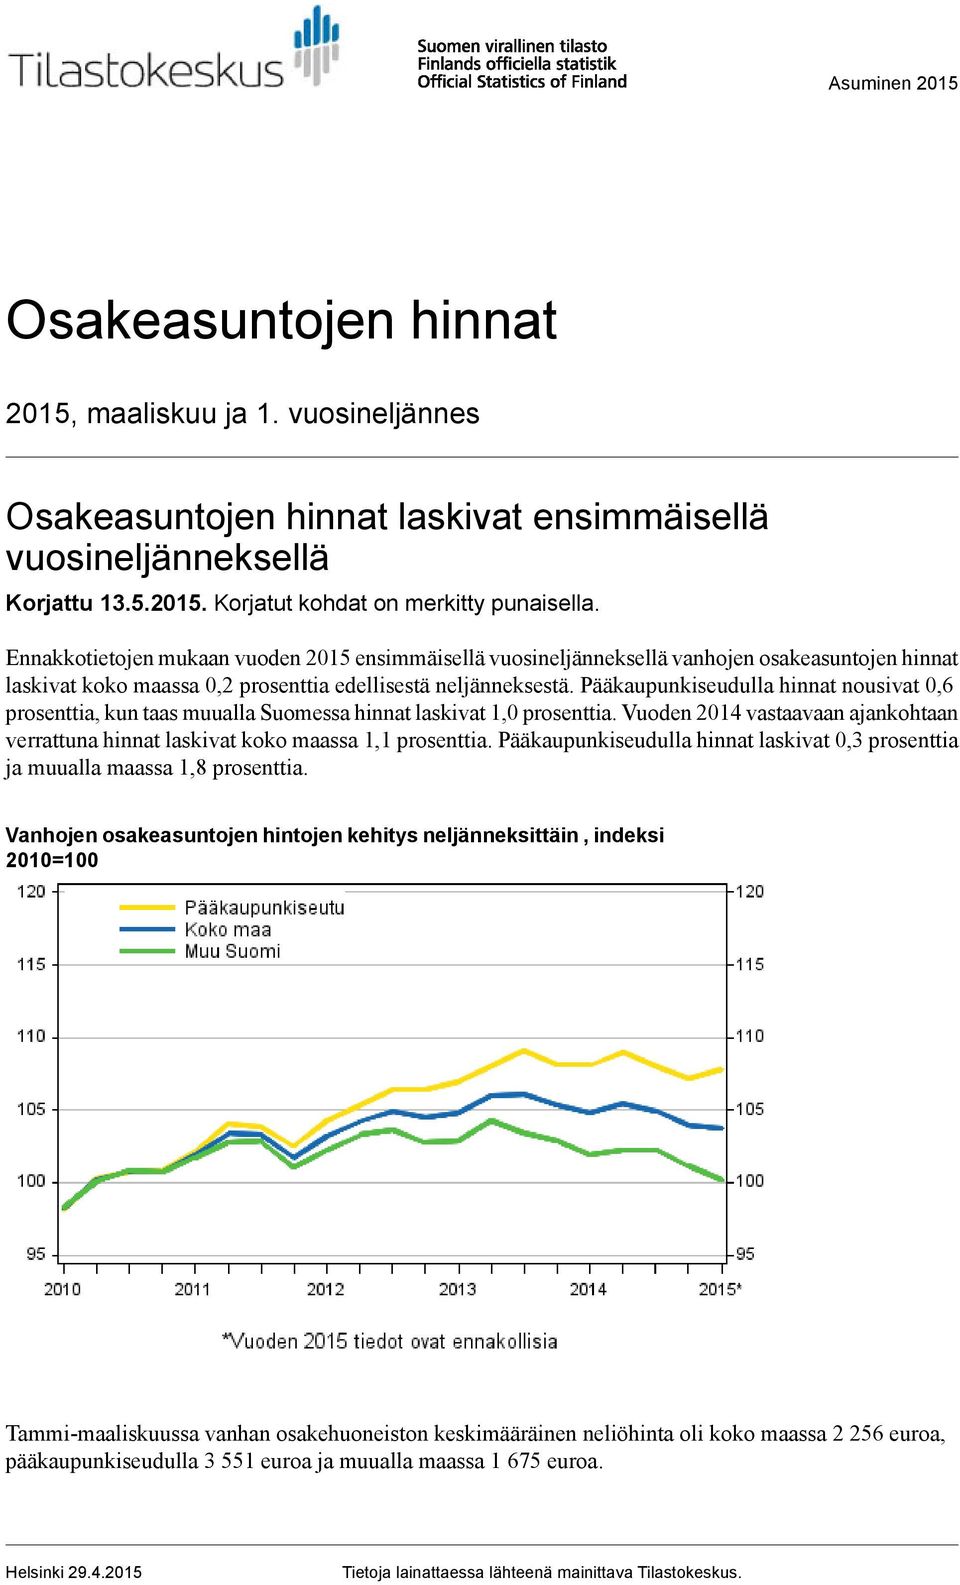 prosenttia, kun taas muualla Suomessa hinnat laskivat 1,0 prosenttia Vuoden vastaavaan ajankohtaan verrattuna hinnat laskivat koko maassa 1,1 prosenttia Pääkaupunkiseudulla hinnat laskivat 0,3